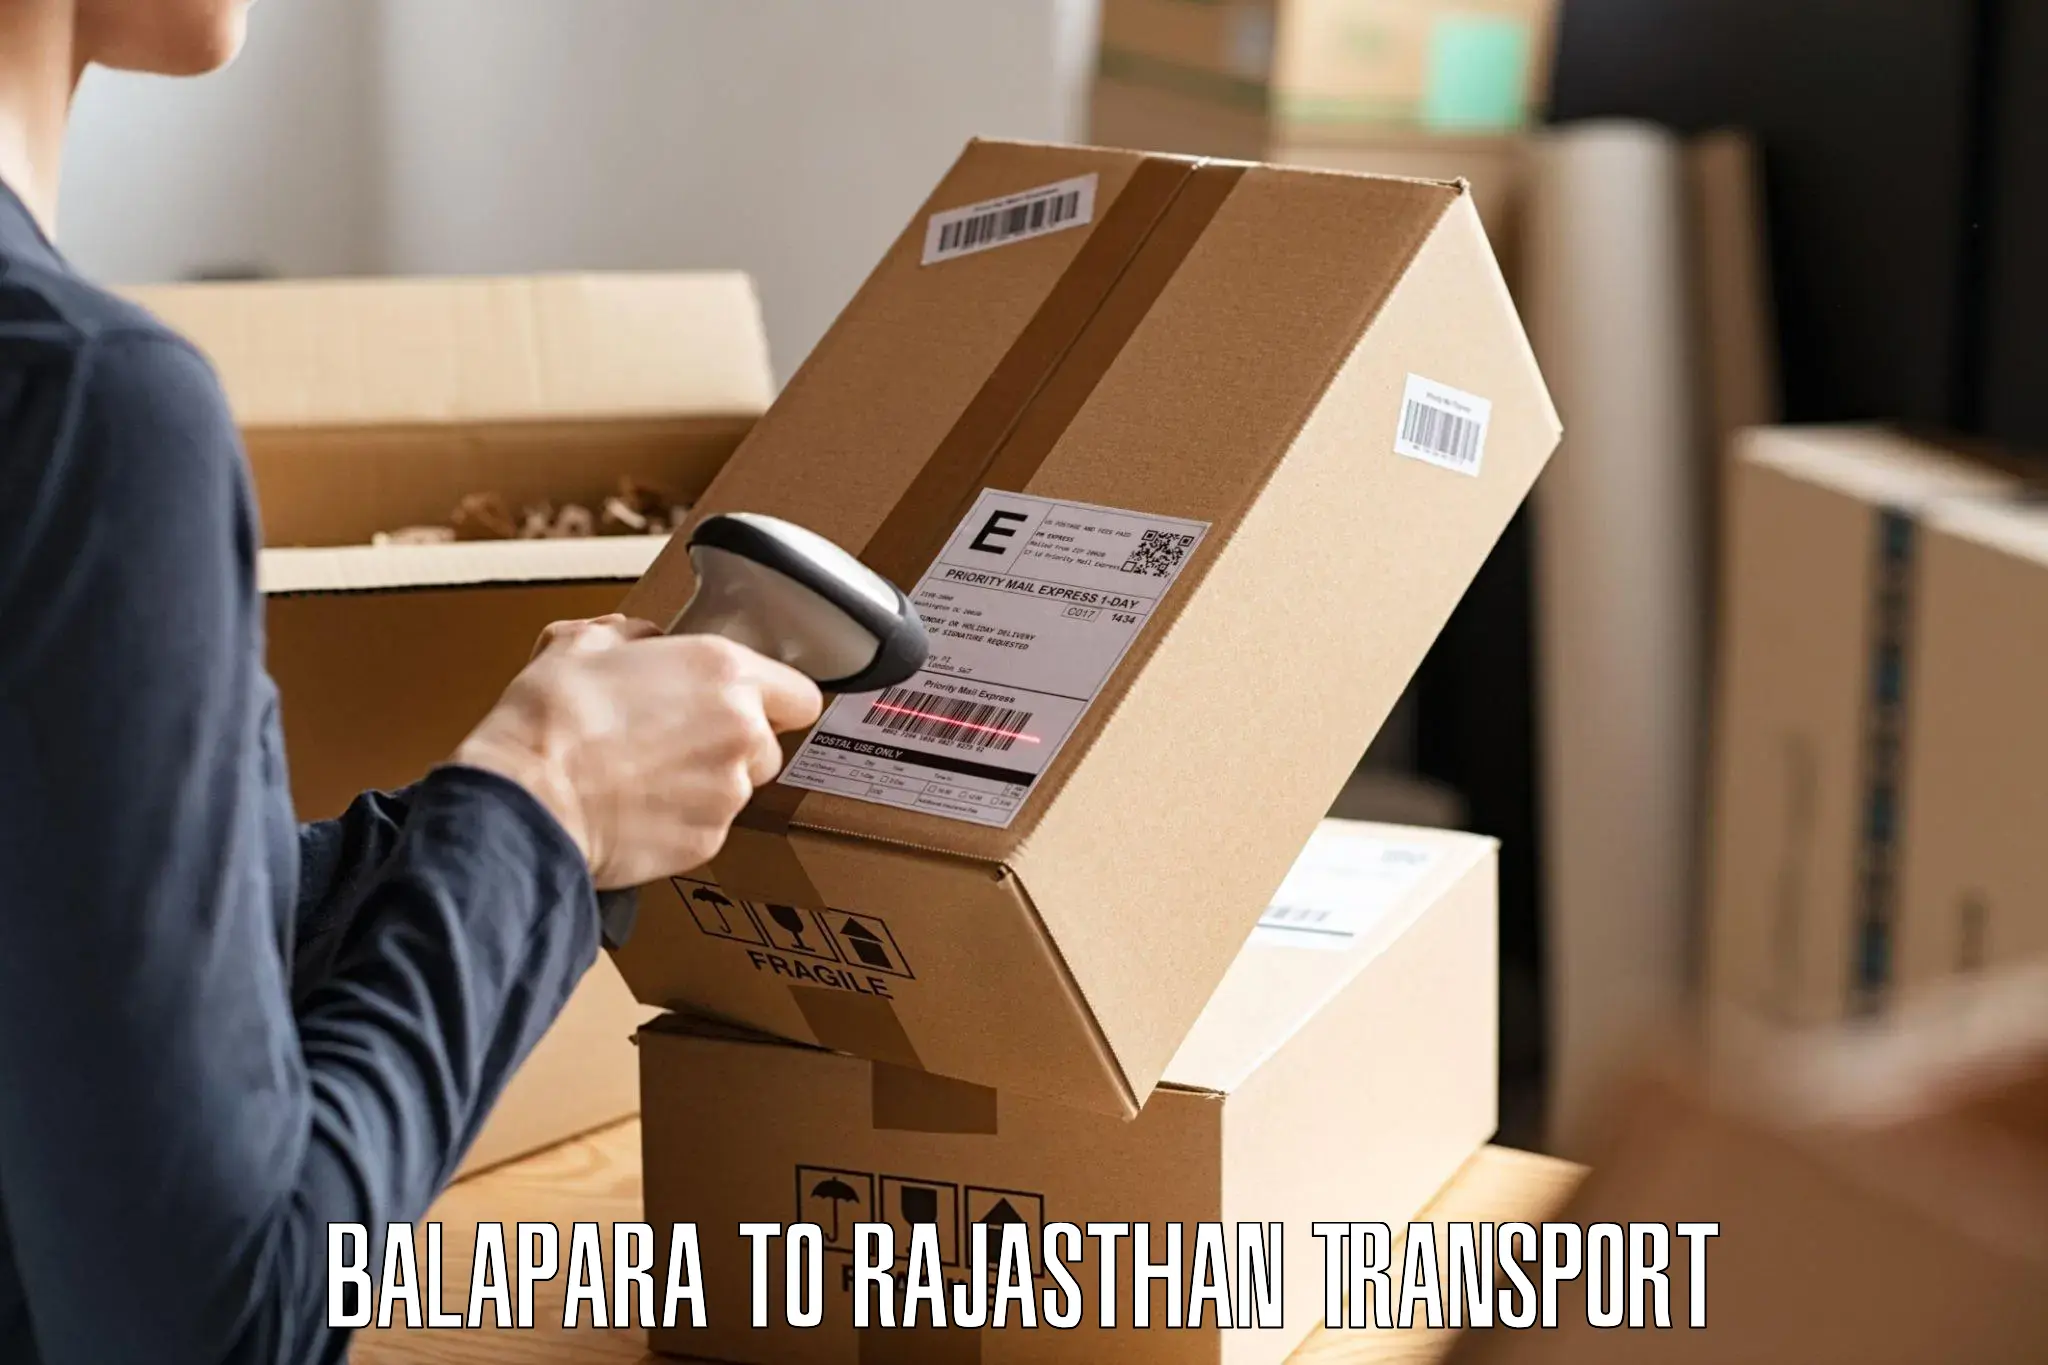 International cargo transportation services Balapara to Rajasthan